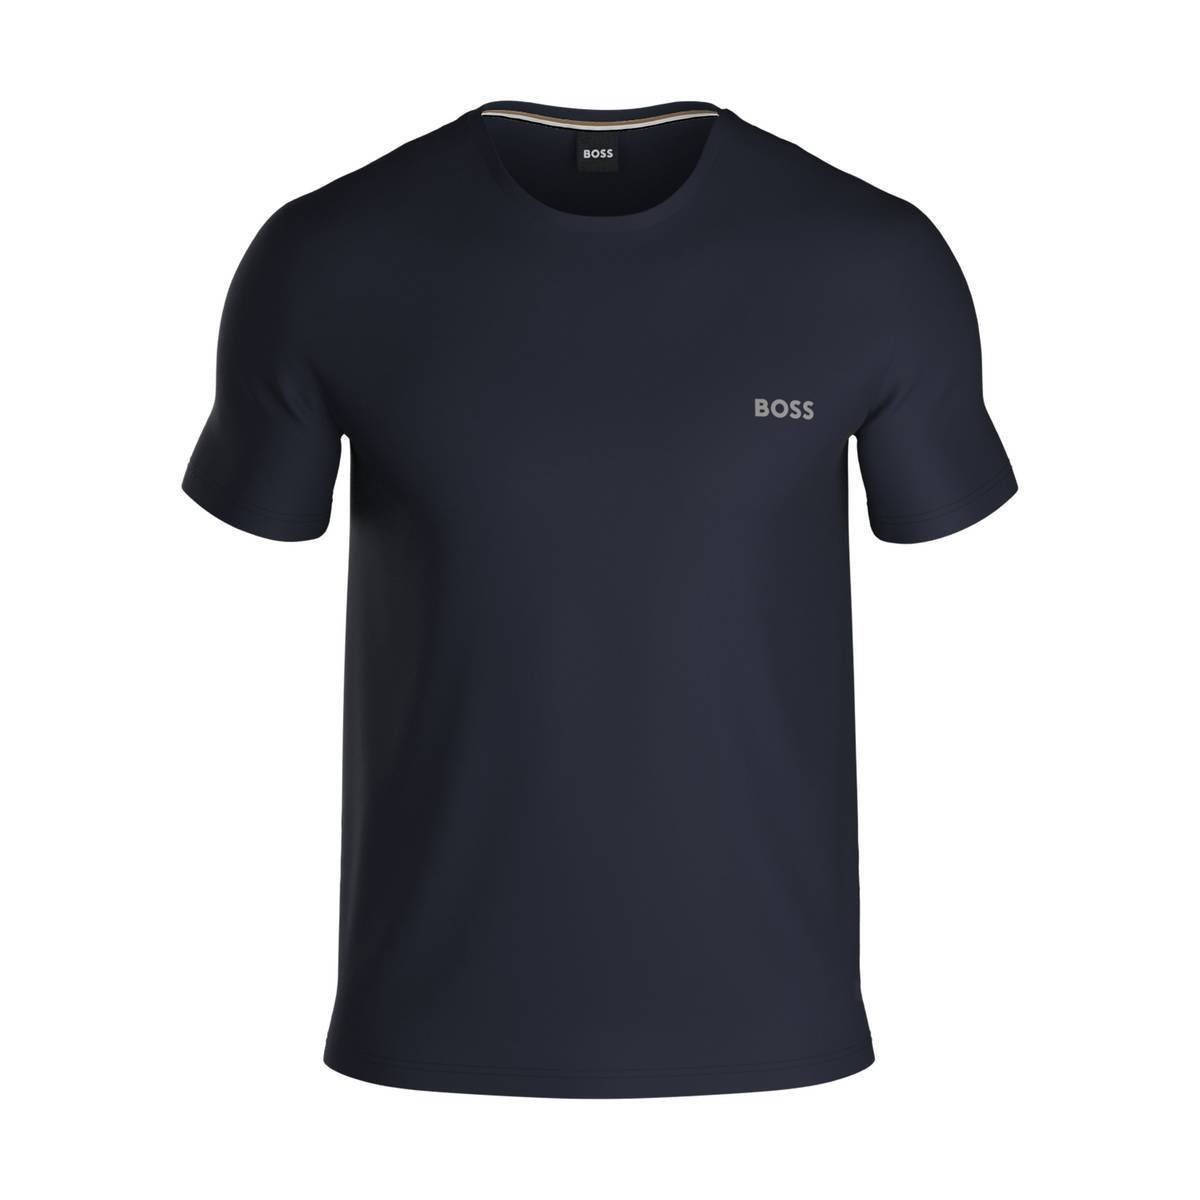 BOSS Dunkelblau - Unterziehshirt T-Shirt T-Shirt Herren Mix&Match,